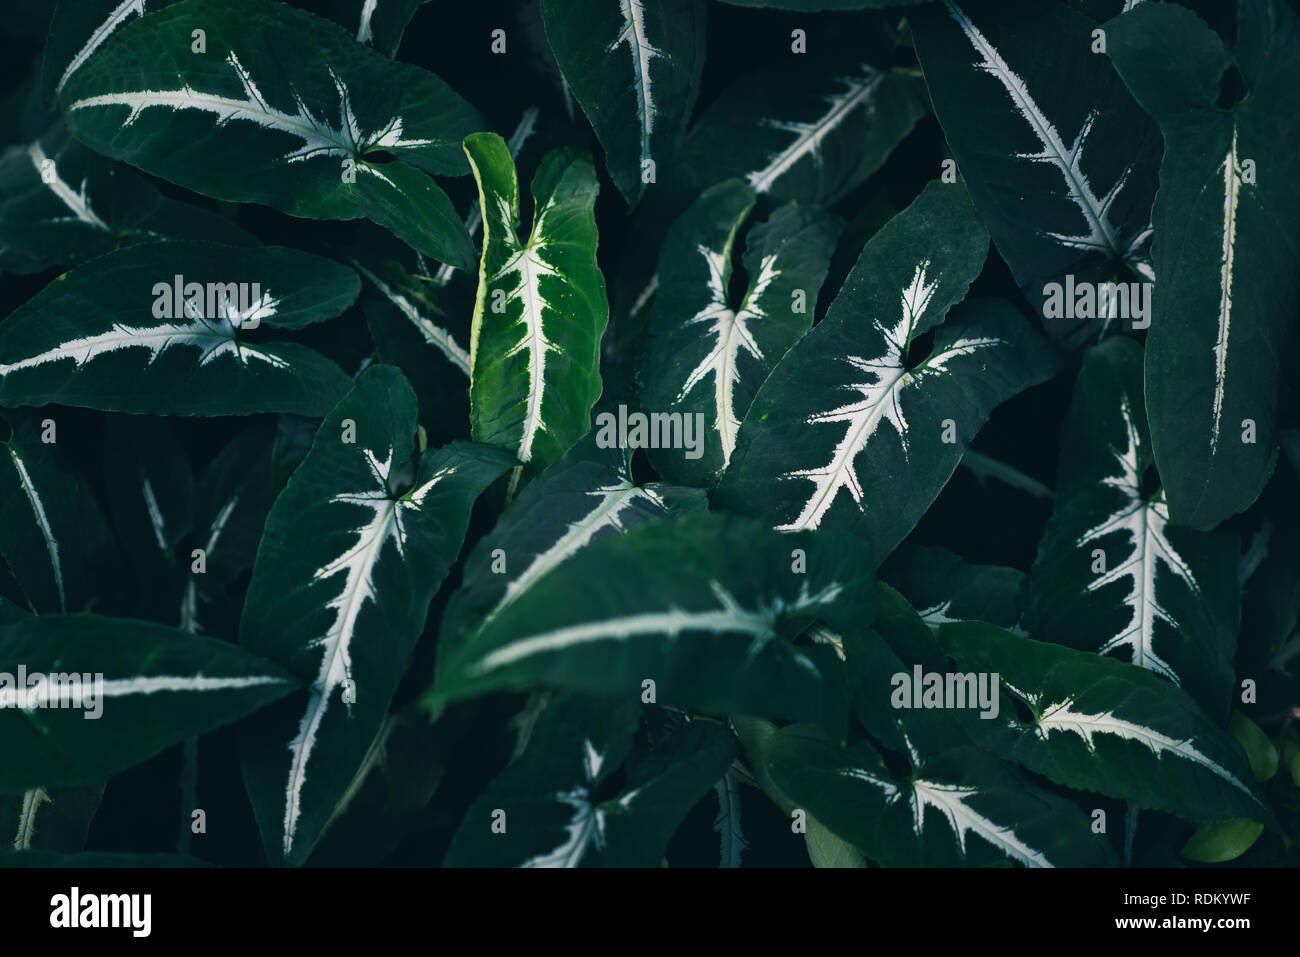 Les feuilles d'une plante tropicale, libre, tonique. La nature de fond vert foncé Banque D'Images